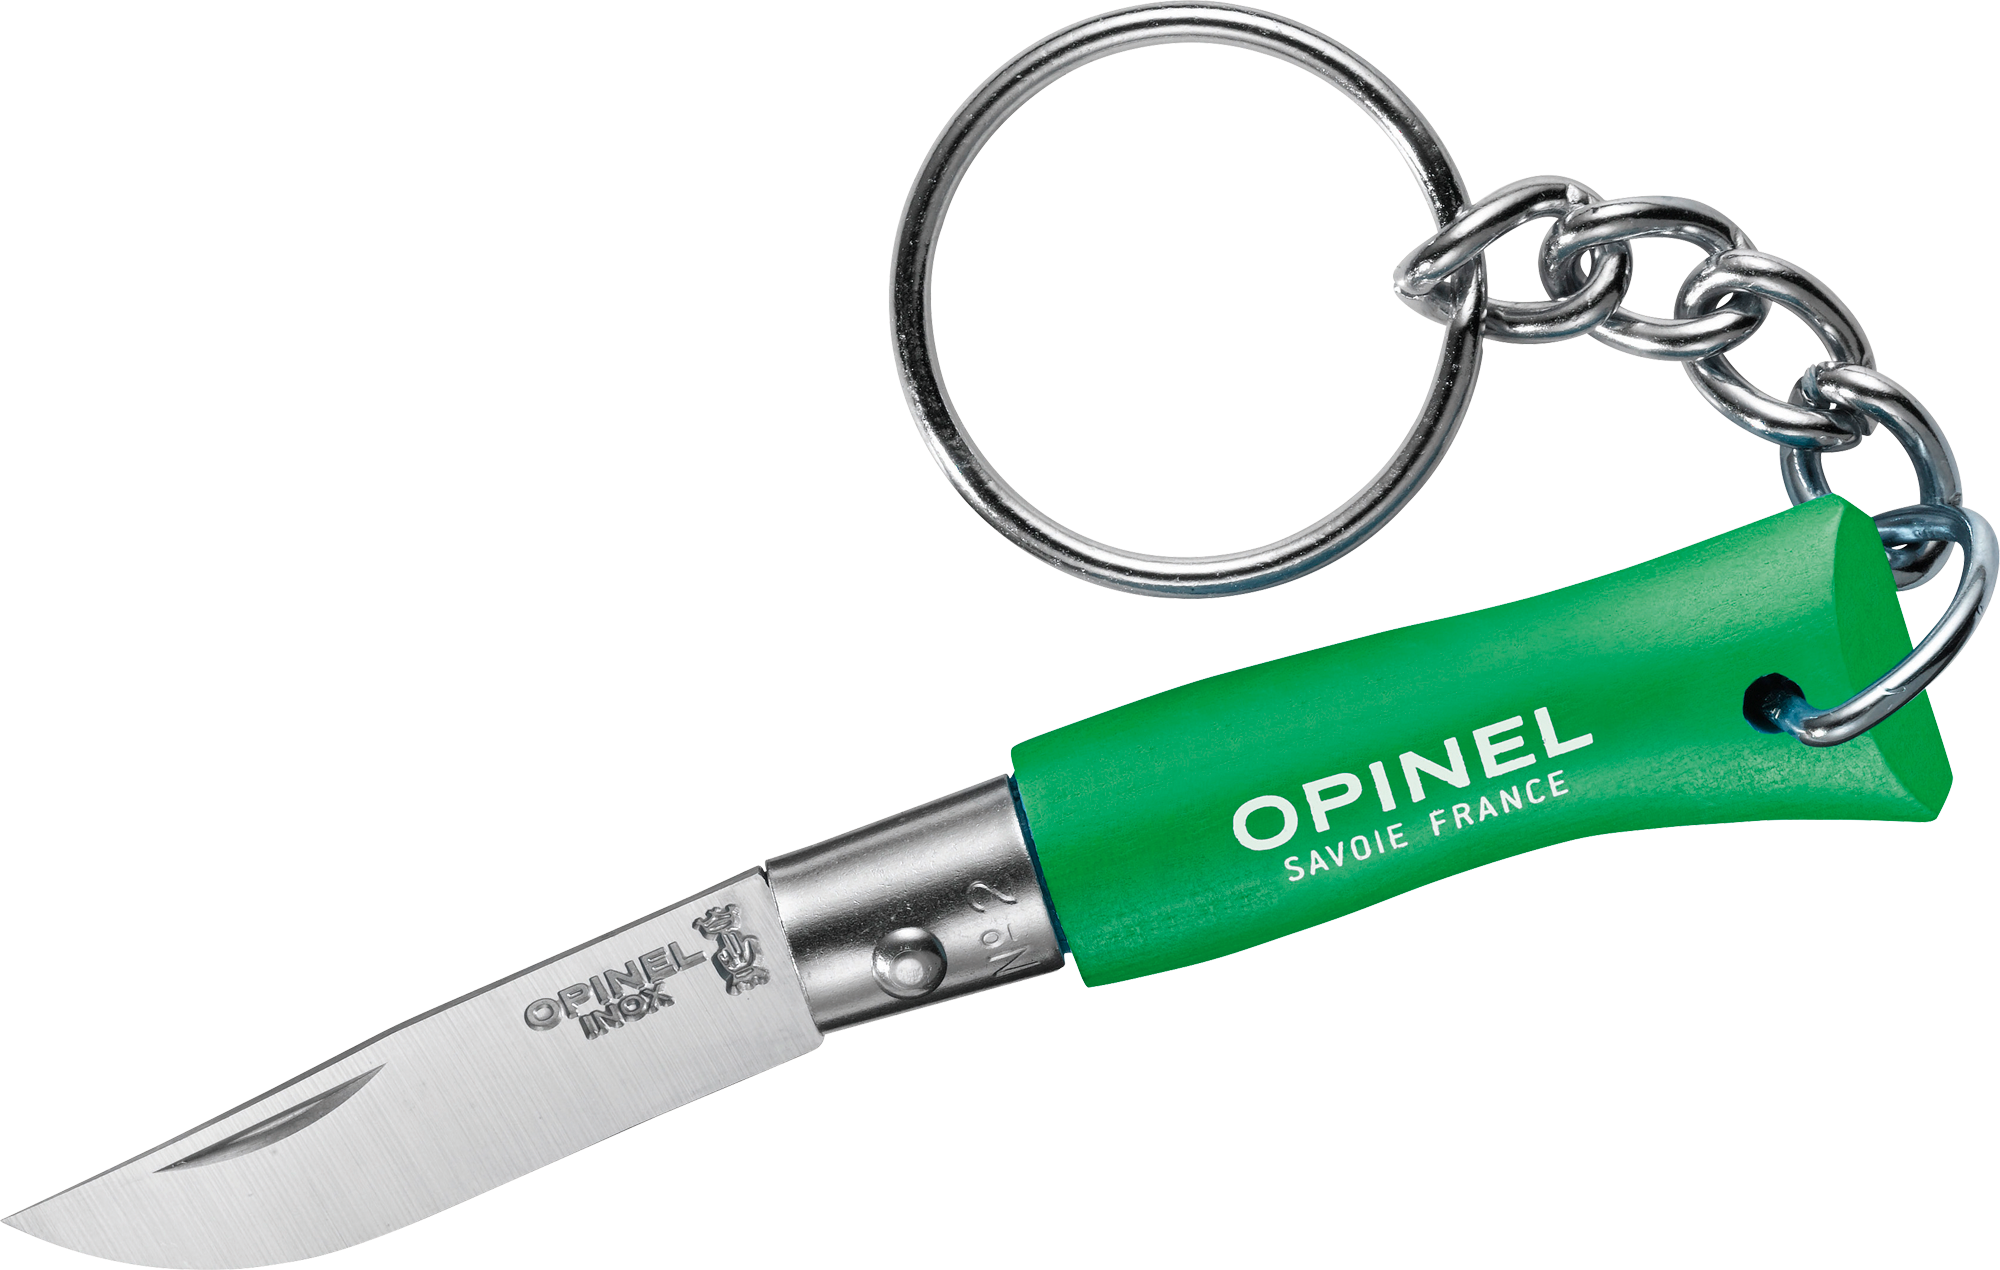 Opinel N°02 Colorama Taschenmesser mit Schlüsselanhänger Klingenlänge 3,5 cm grün